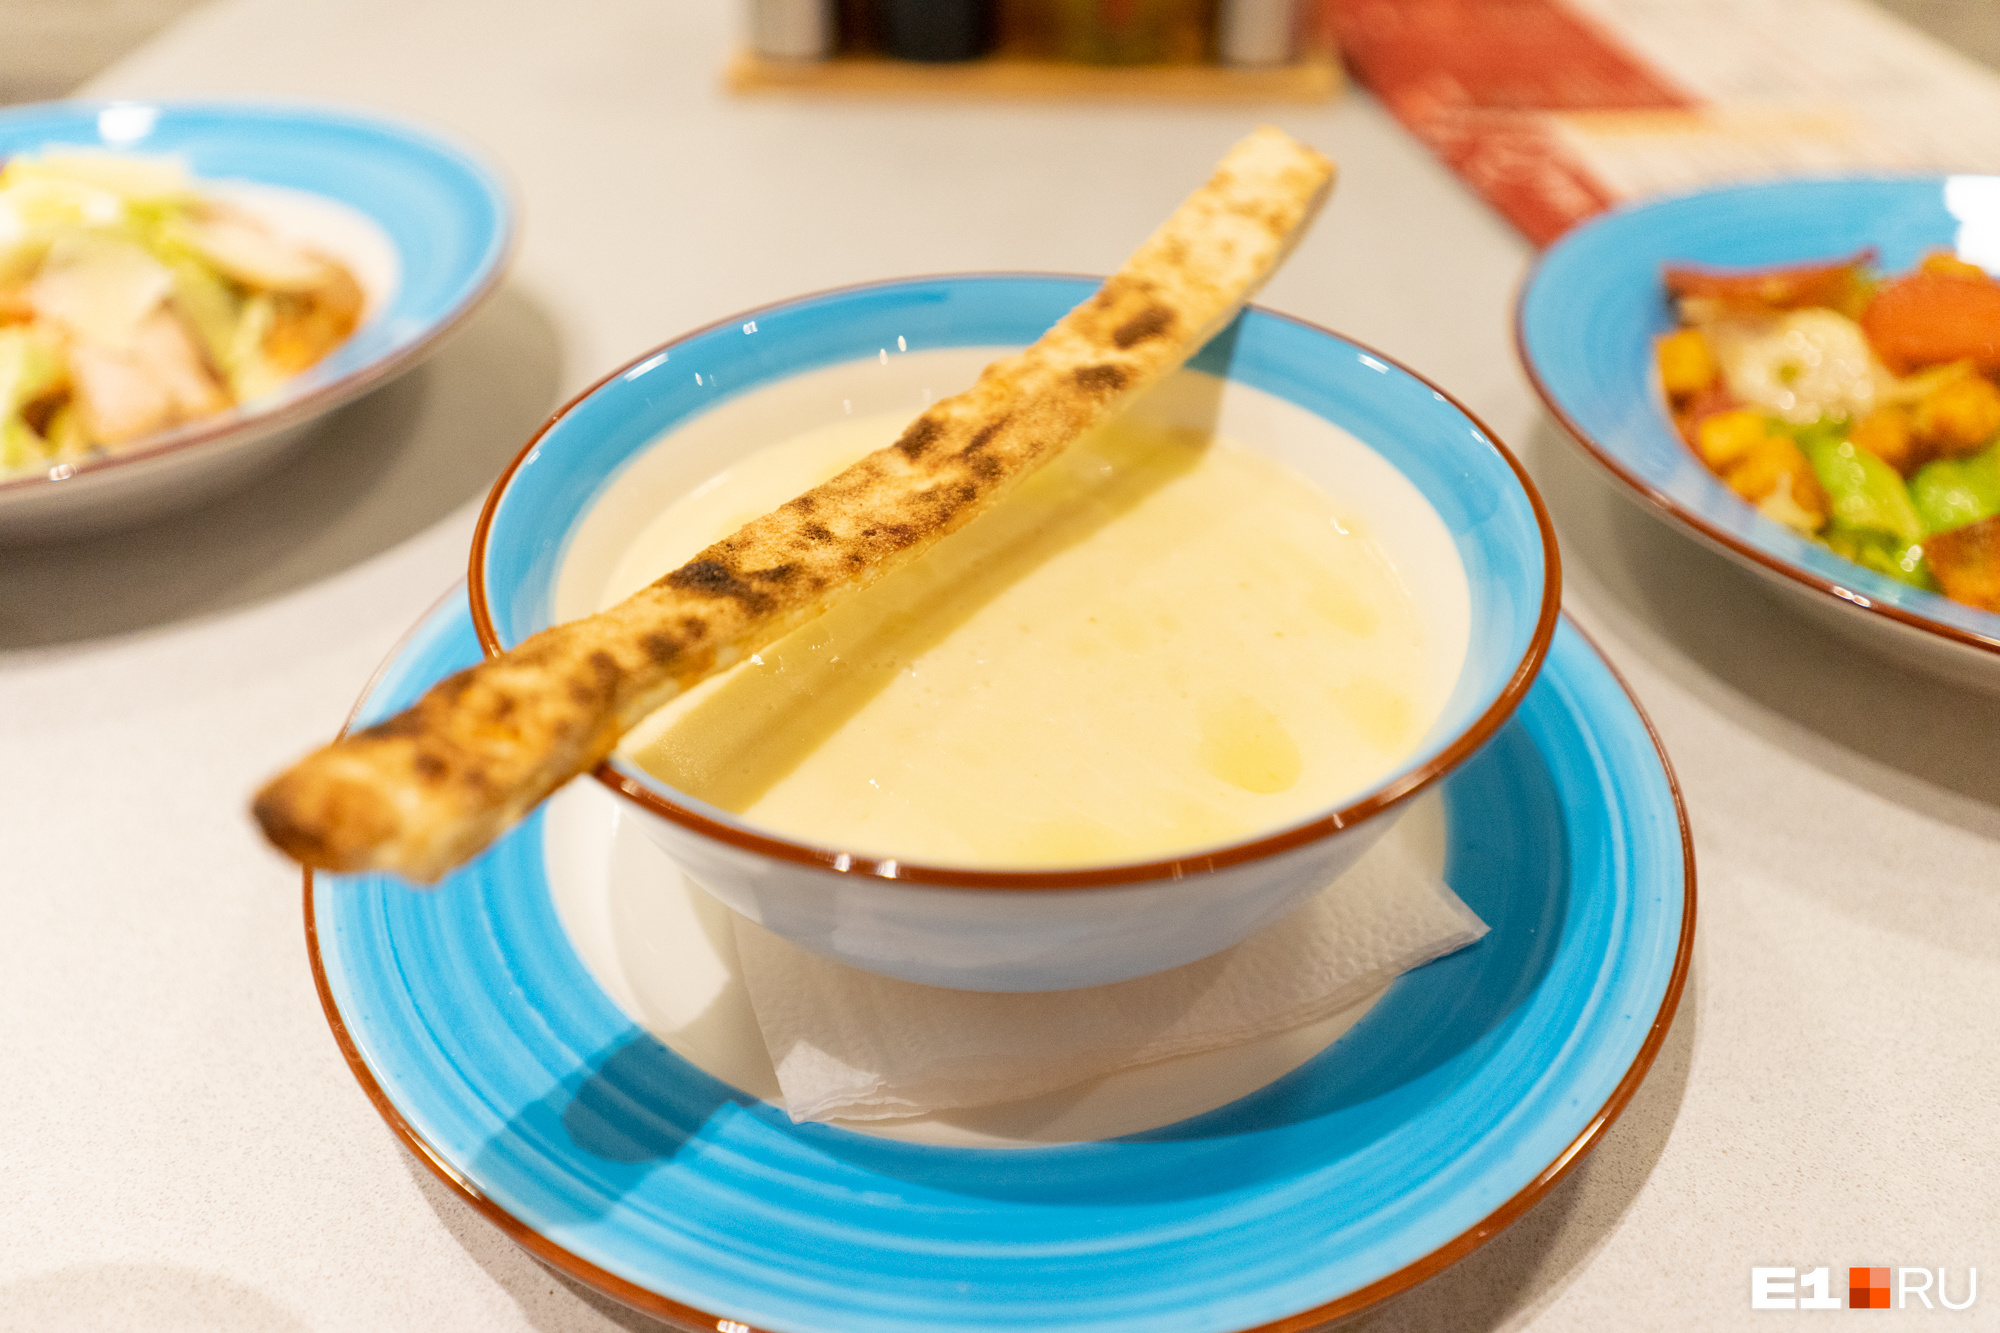 Блюда подают в ярких тарелках. Сырный крем-суп стоит 260 рублей